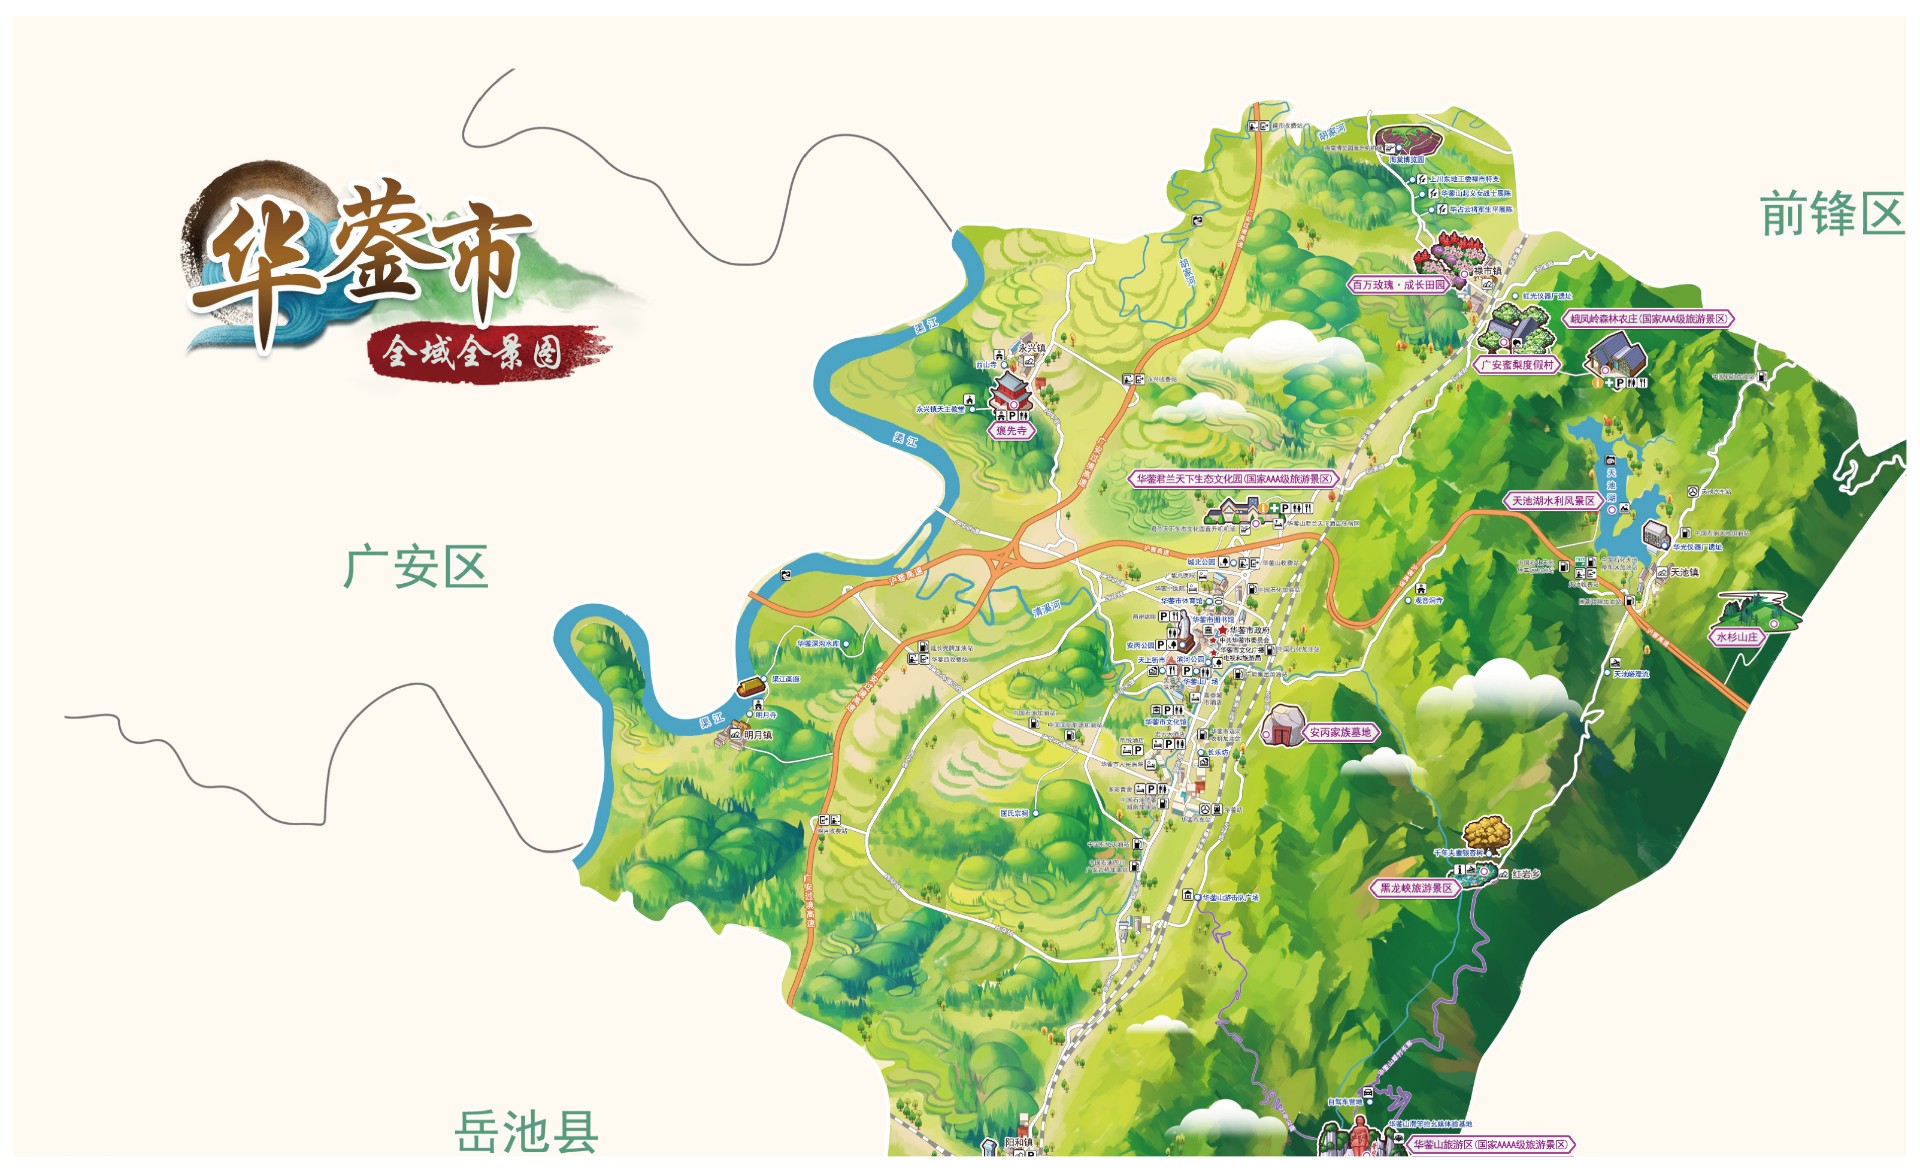 华蓥市全域手绘地图